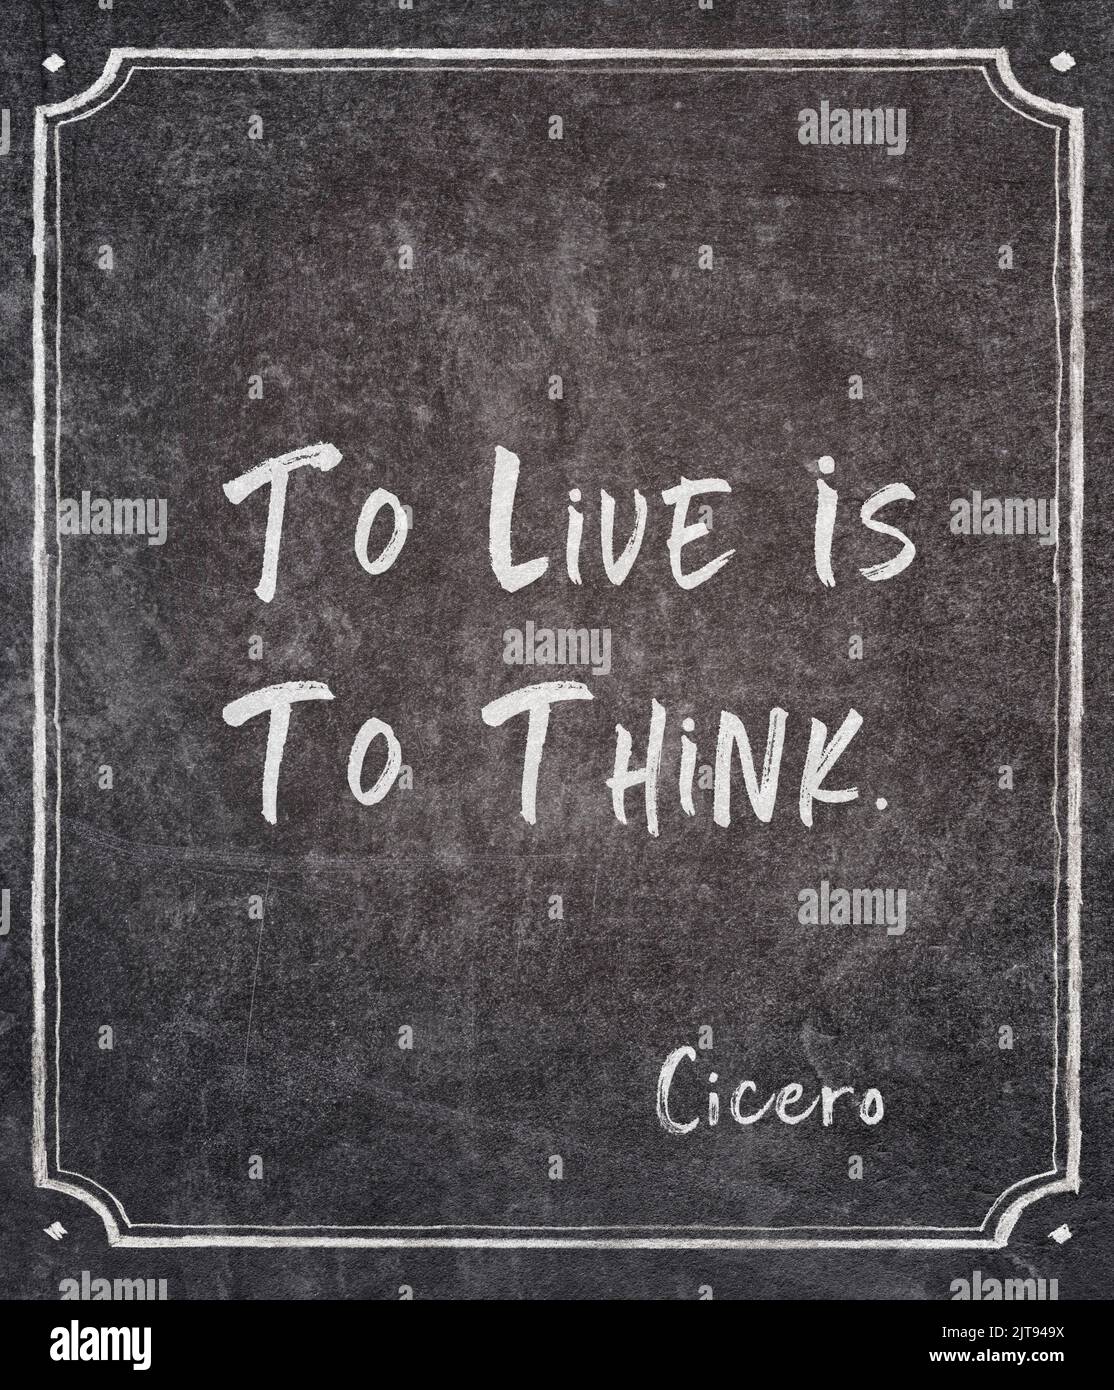 Vivir es pensar - cita del antiguo filósofo romano Cicerón escrita en pizarra enmarcada Foto de stock